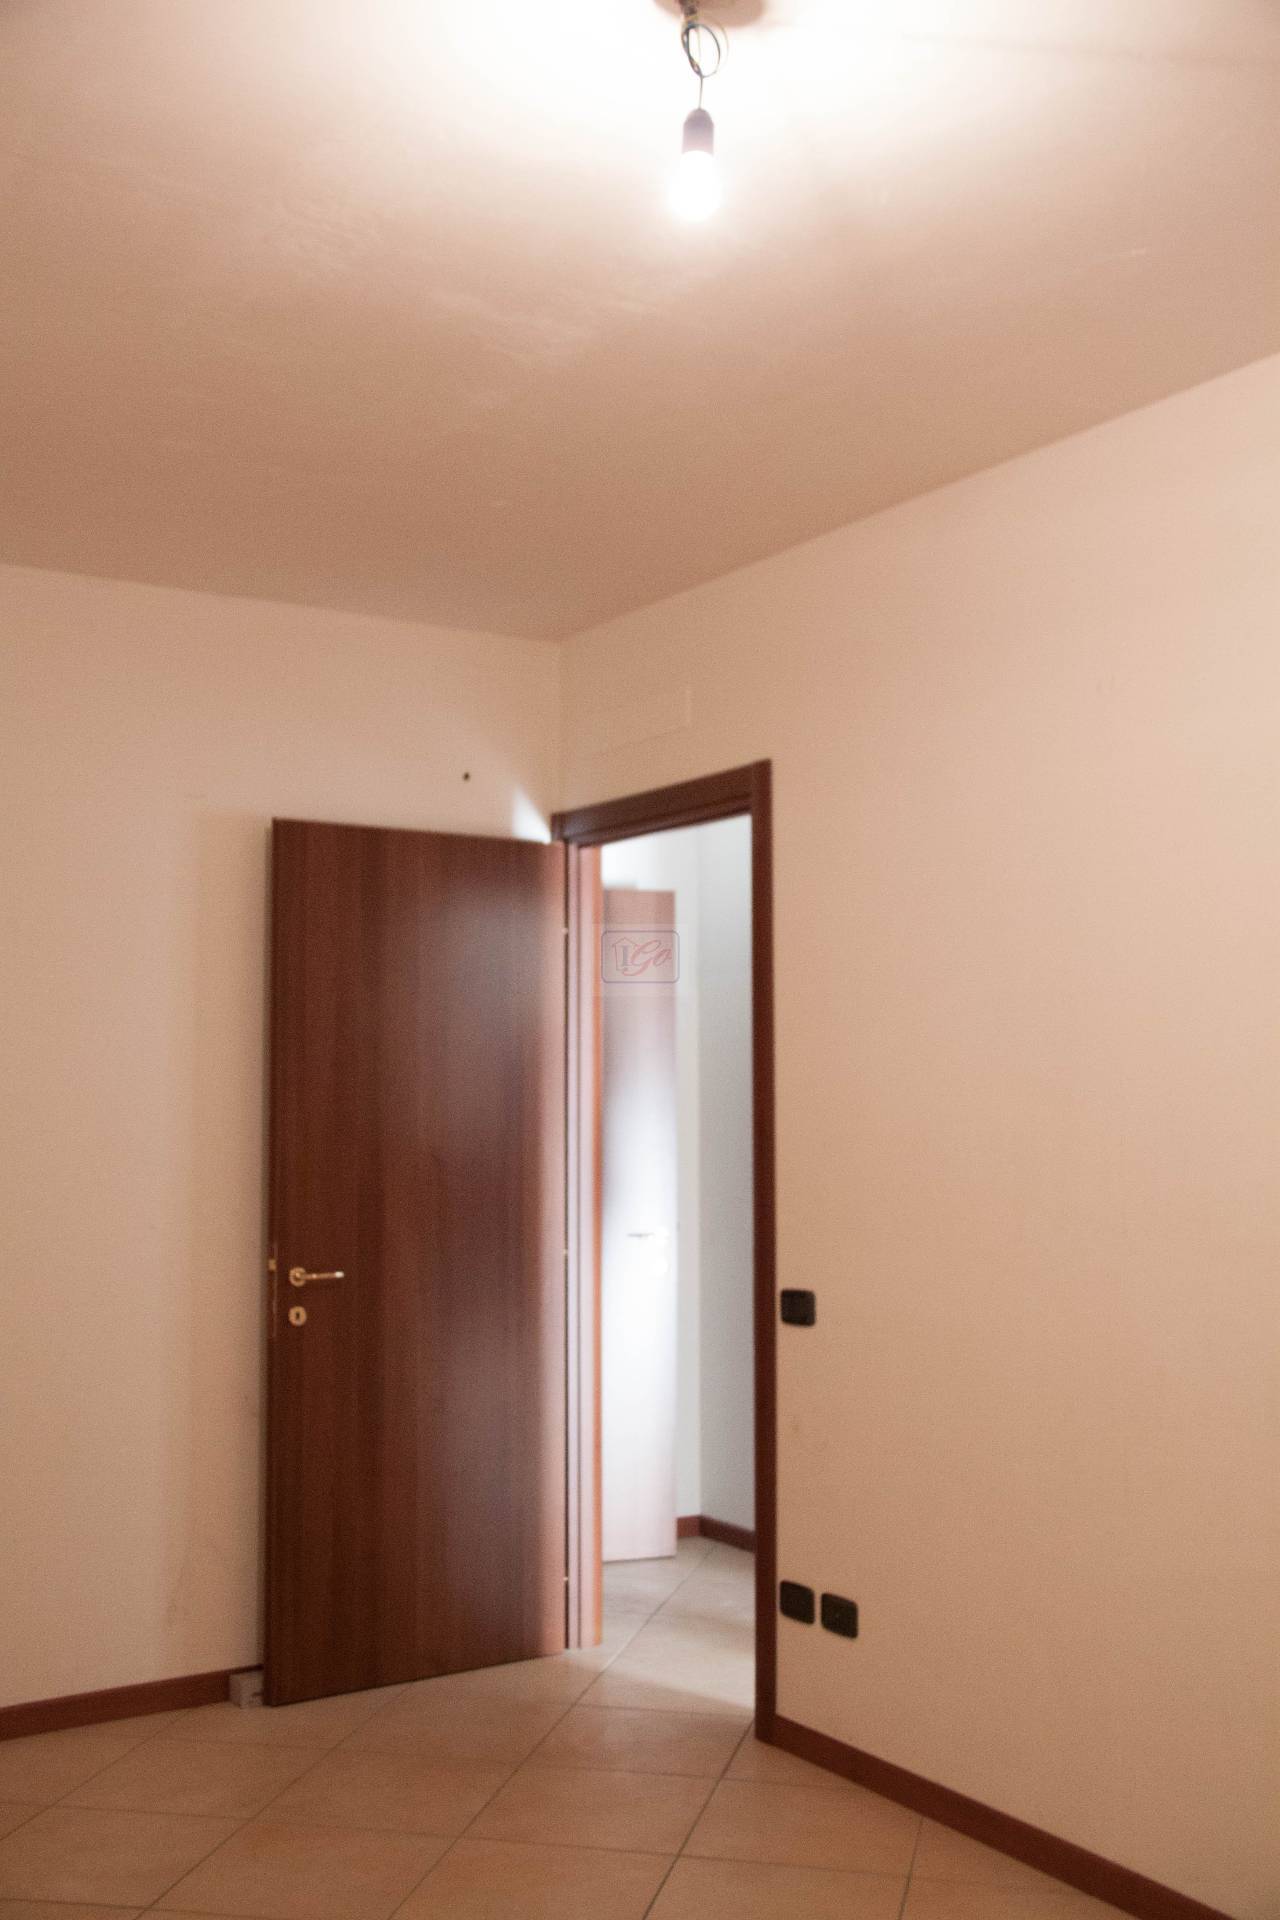 Appartamento in vendita a Pozzo d'Adda, 2 locali, prezzo € 165.000 | PortaleAgenzieImmobiliari.it